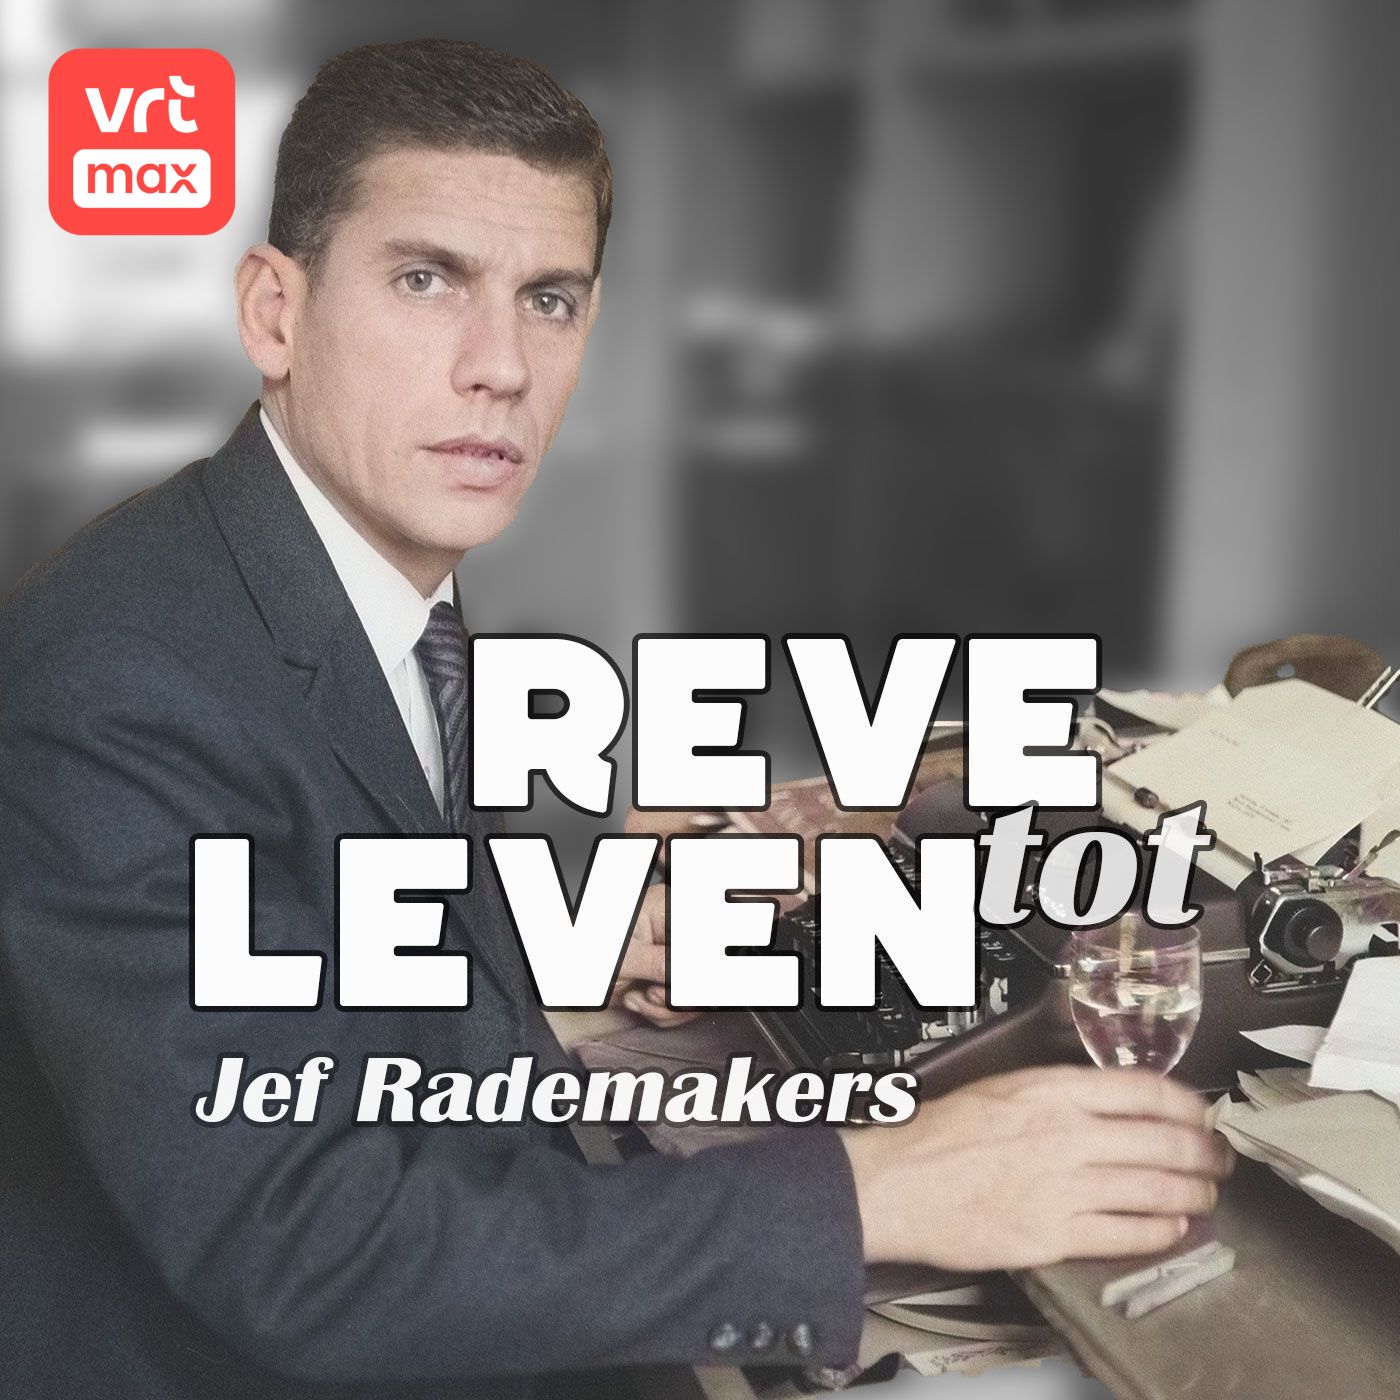 Jef Rademakers